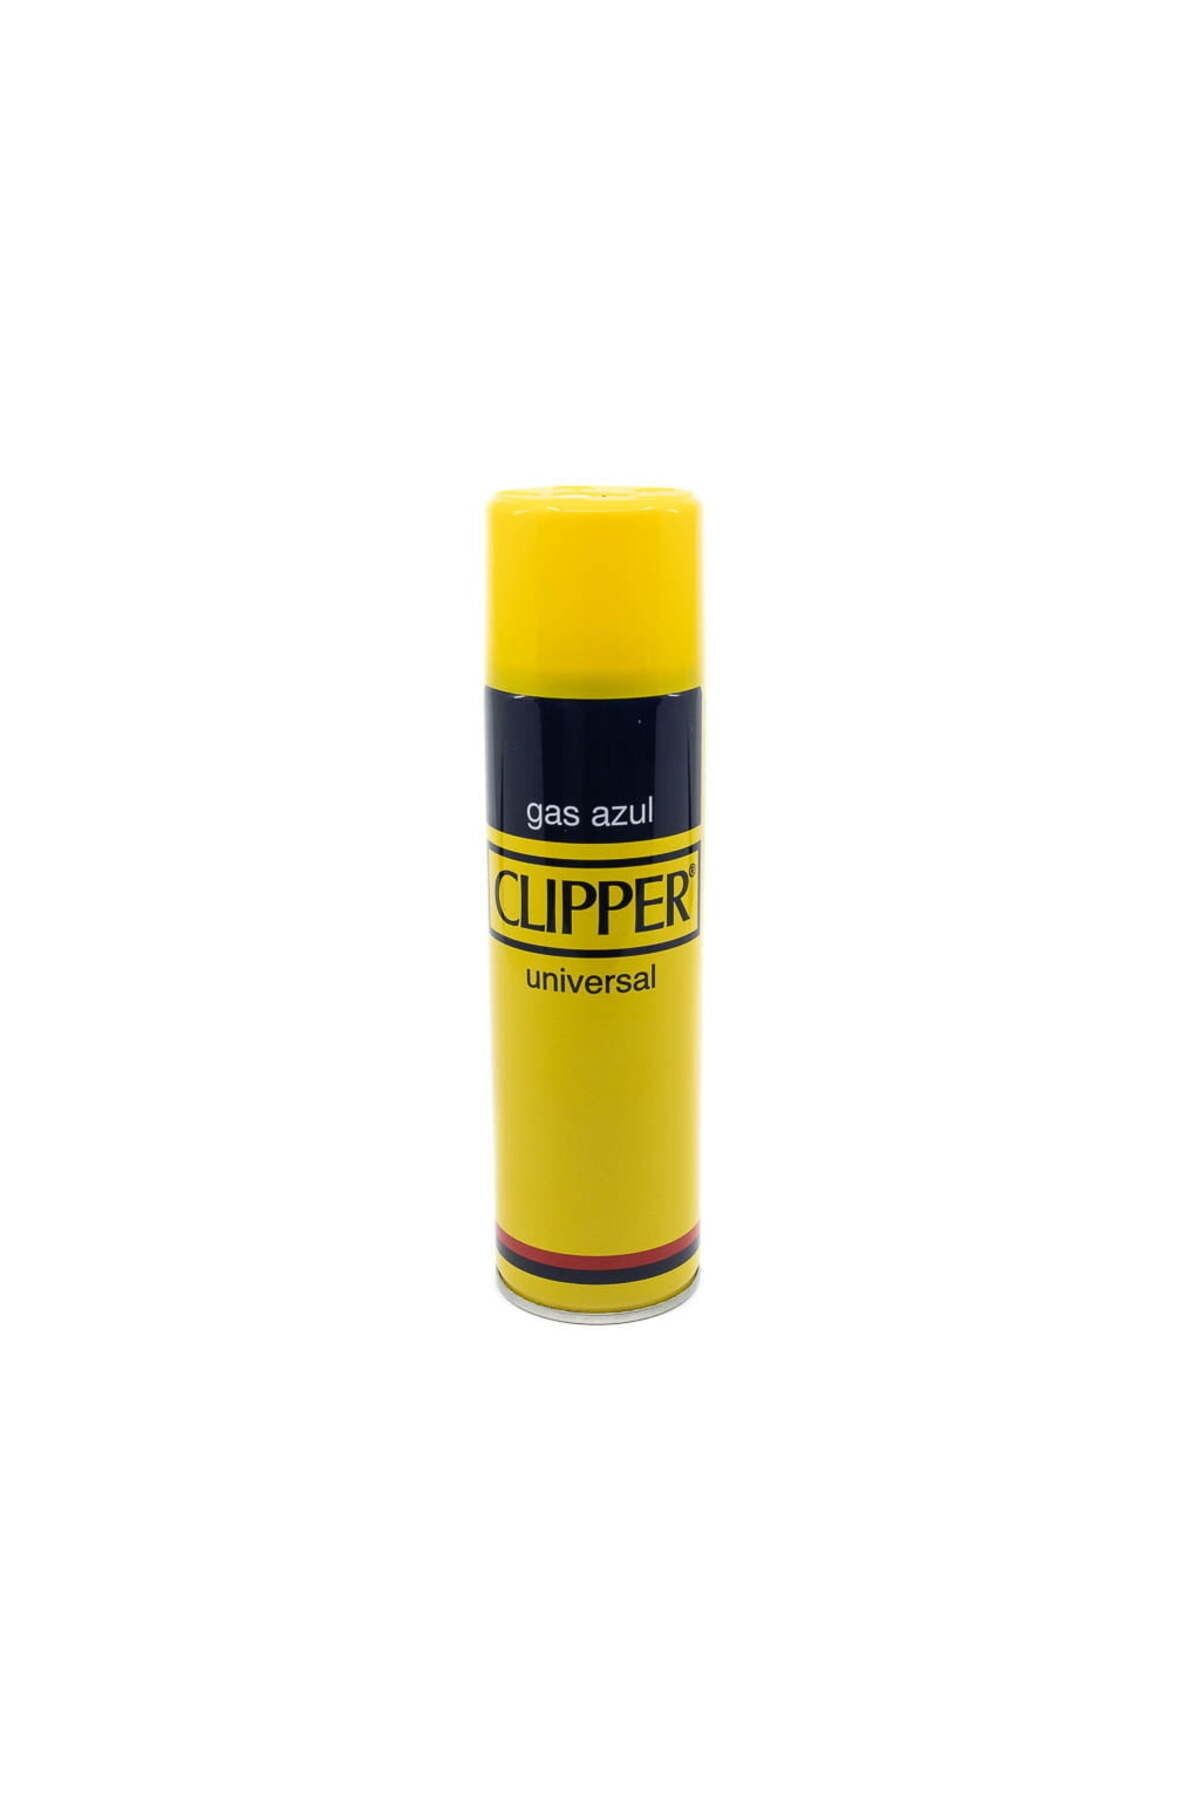 Clipper 250 ml. Universal Gas Azul Çakmak Gazı